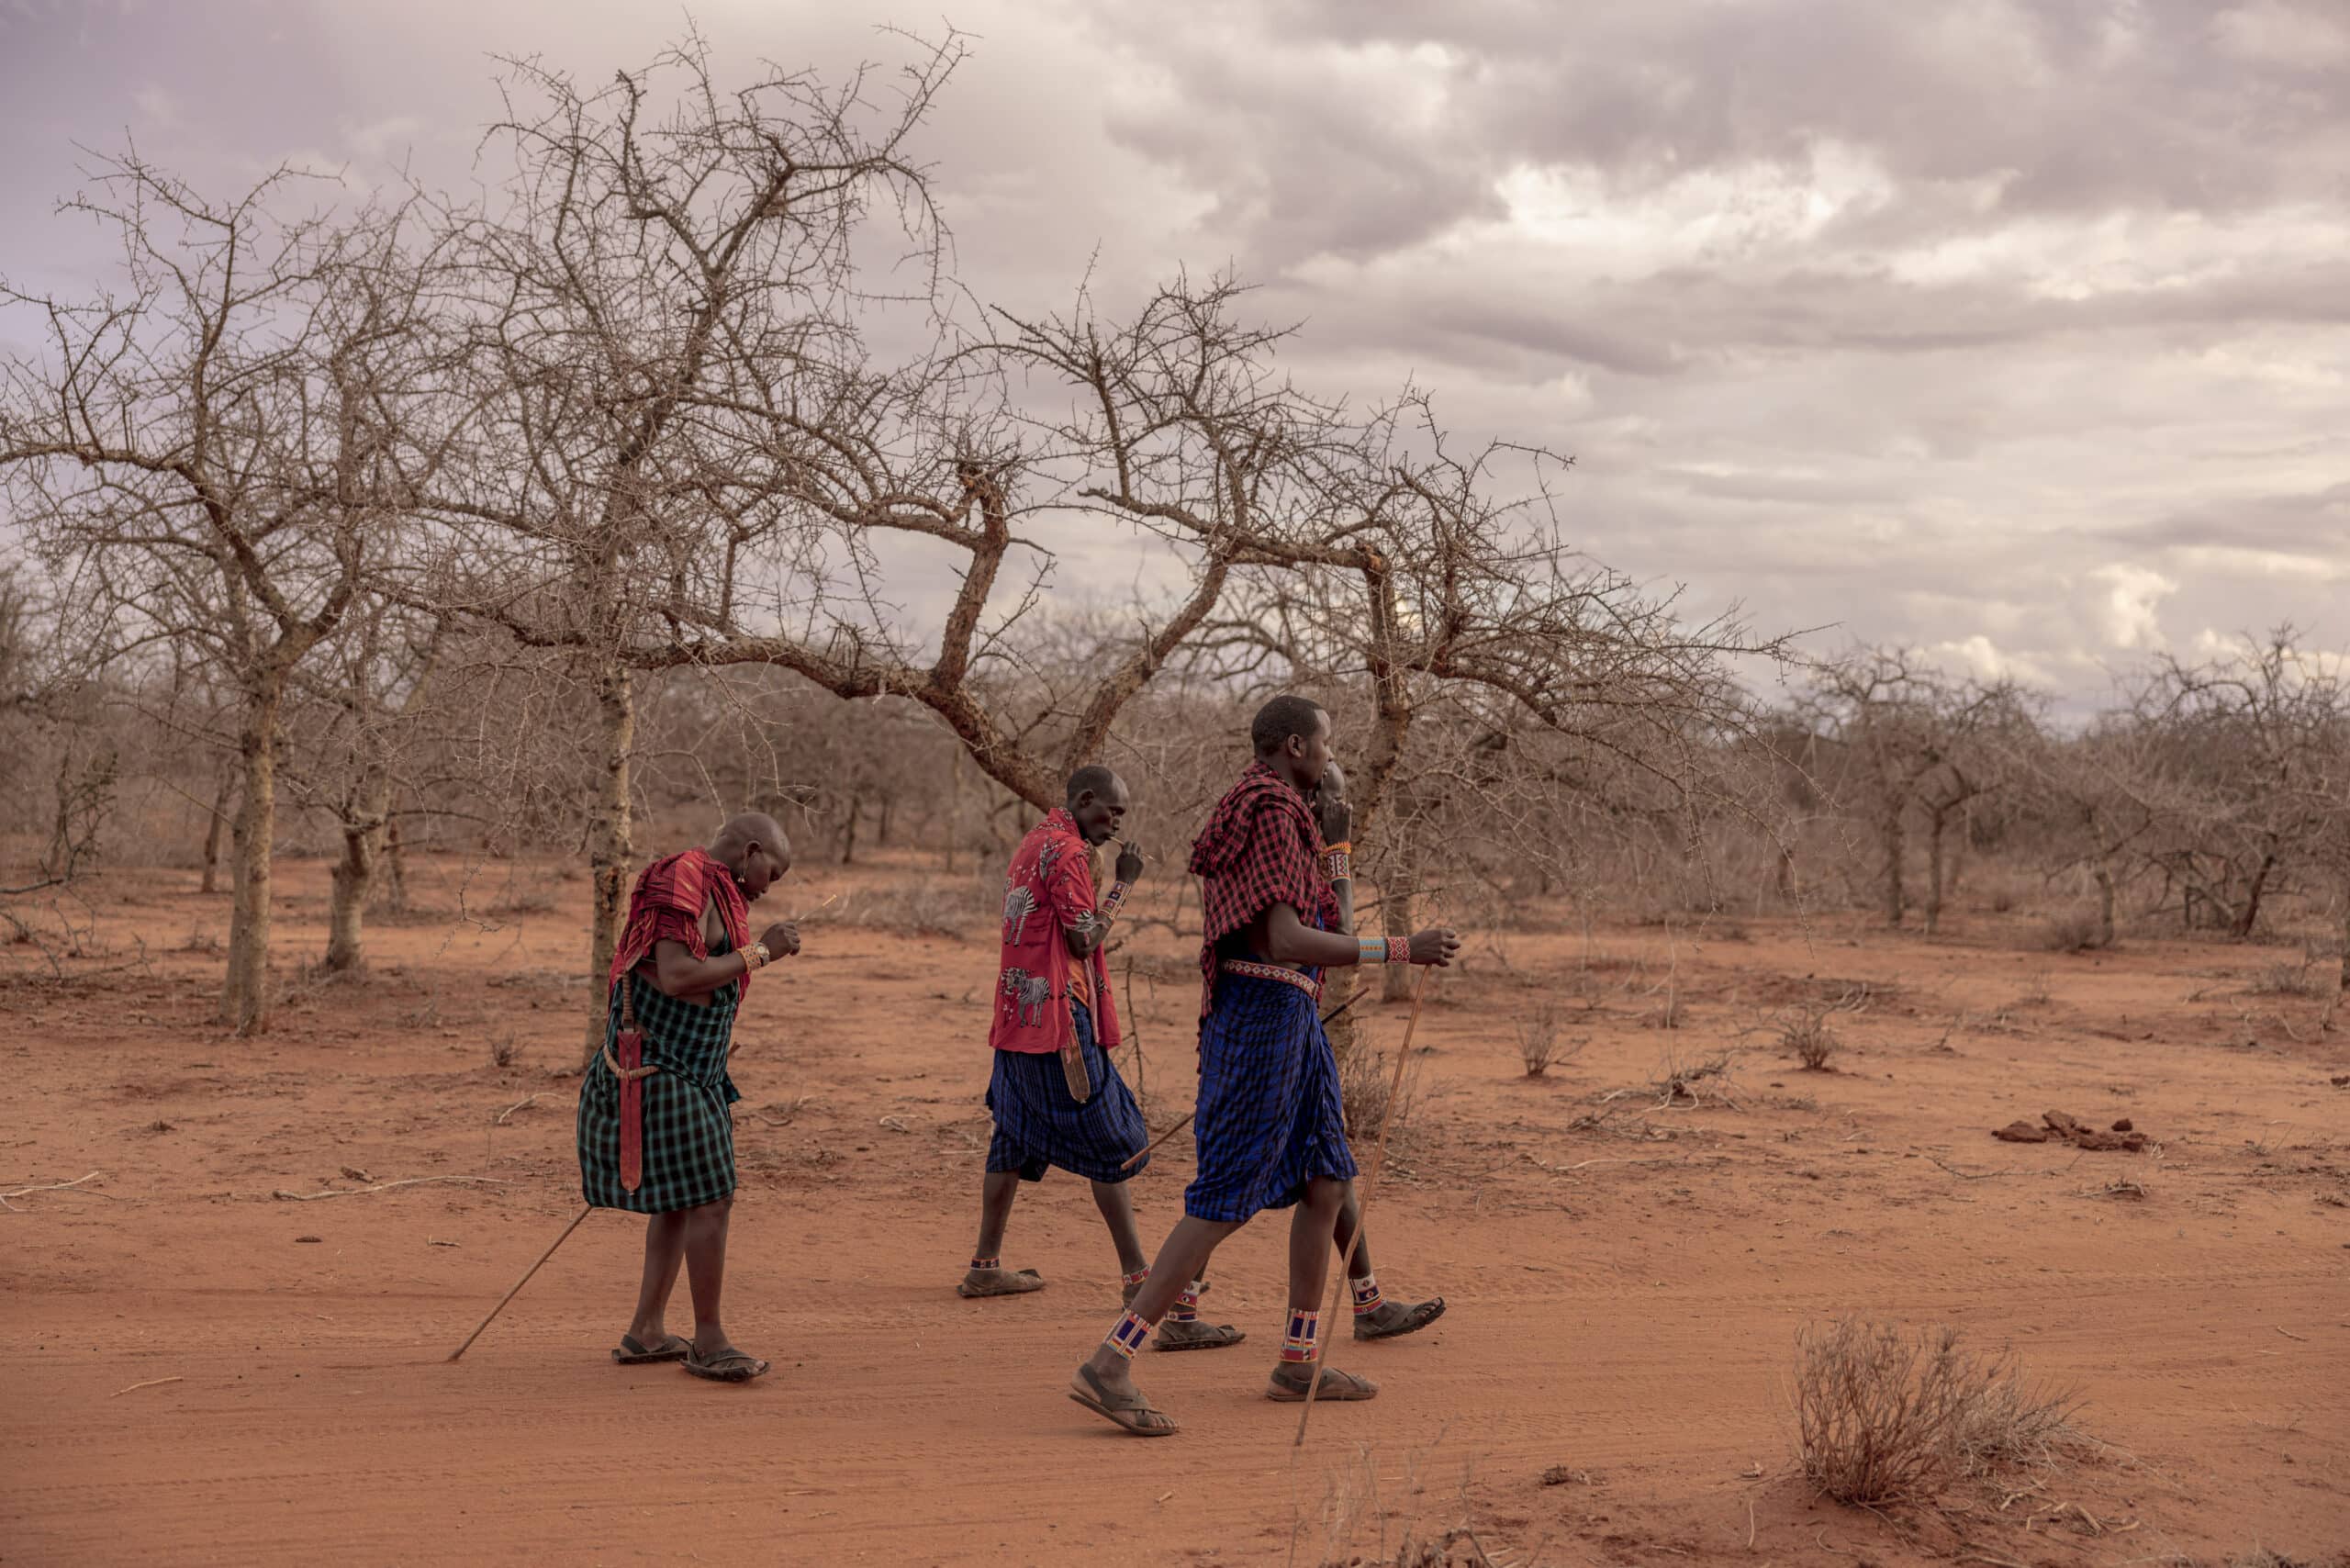 Drei Massai wandern unter einem bewölkten Himmel durch eine karge, trockene Landschaft mit blattlosen Bäumen. Sie tragen traditionelle Kleidung und Stöcke. © Fotografie Tomas Rodriguez